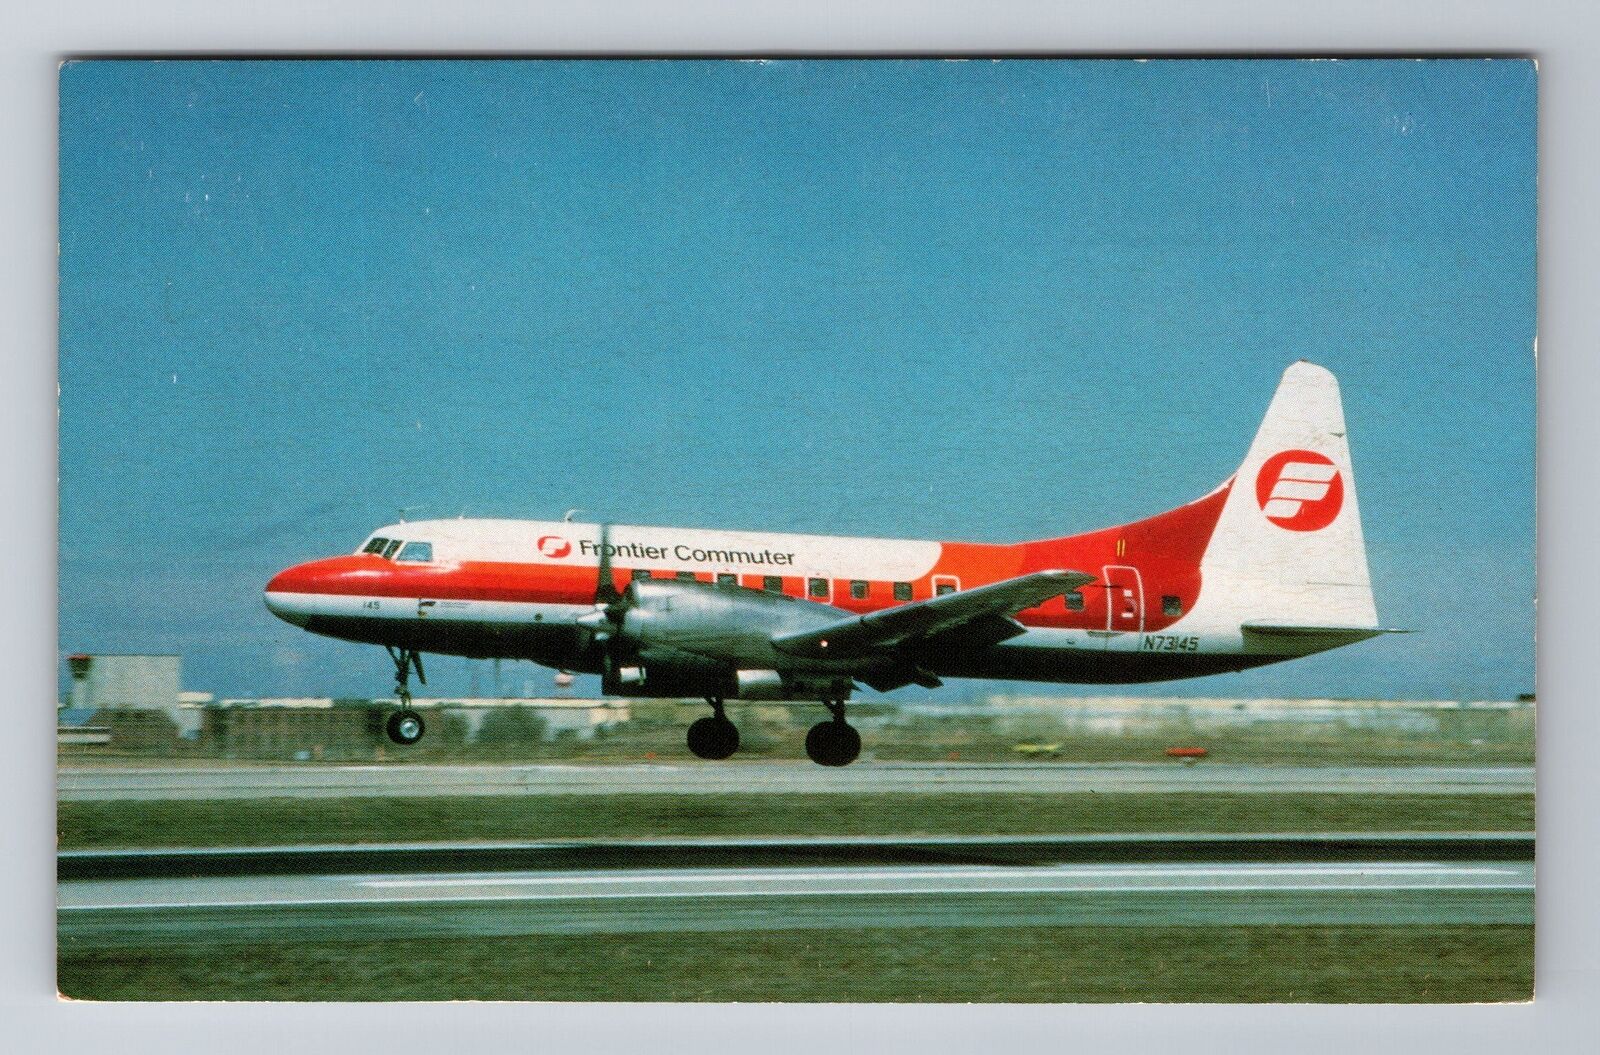 Frontier Commuter Convair CV-580, Plane, Transportation, Vintage Postcard